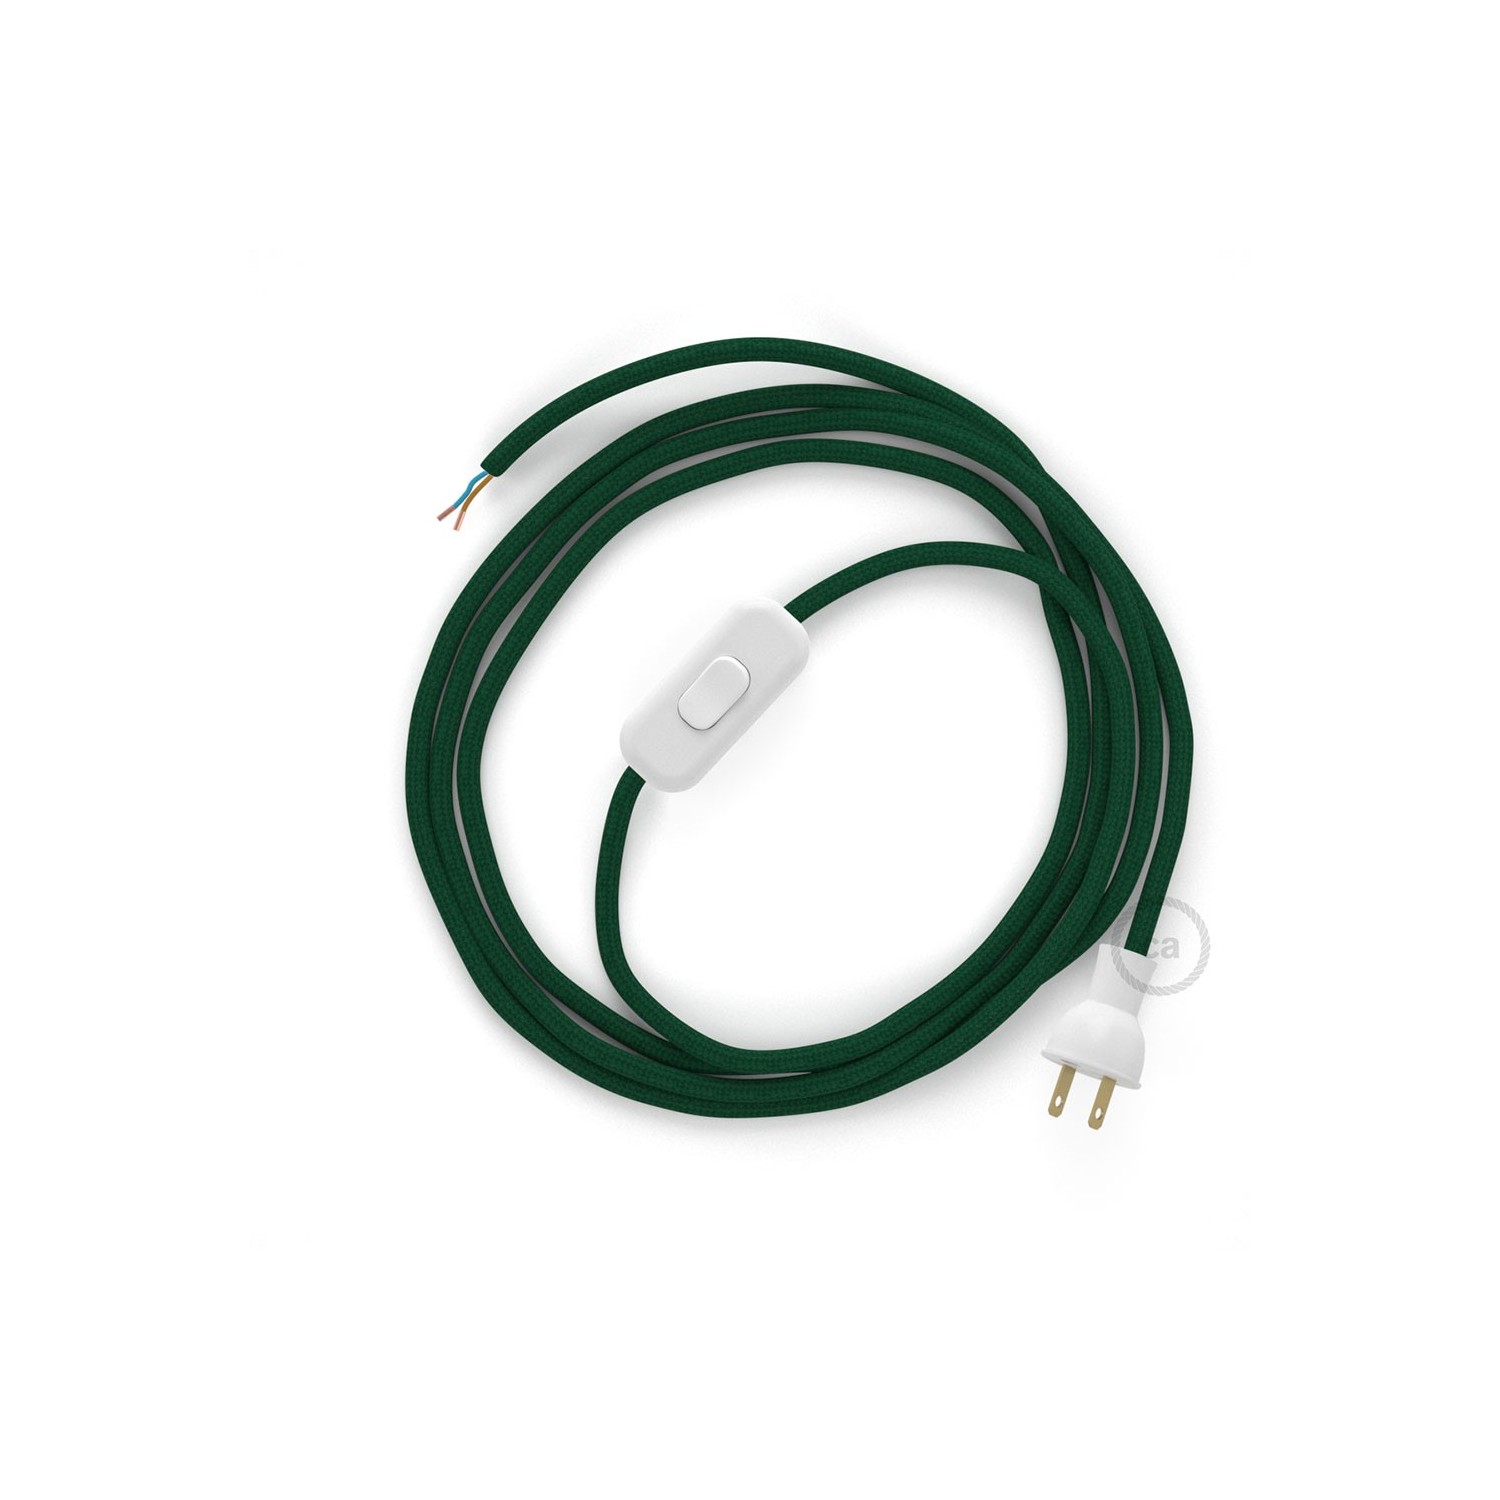 Cableado para lámpara de mesa, cable RM21 Rayón Verde Oscuro 1,8 m. Elige el color de la clavija y del interruptor!